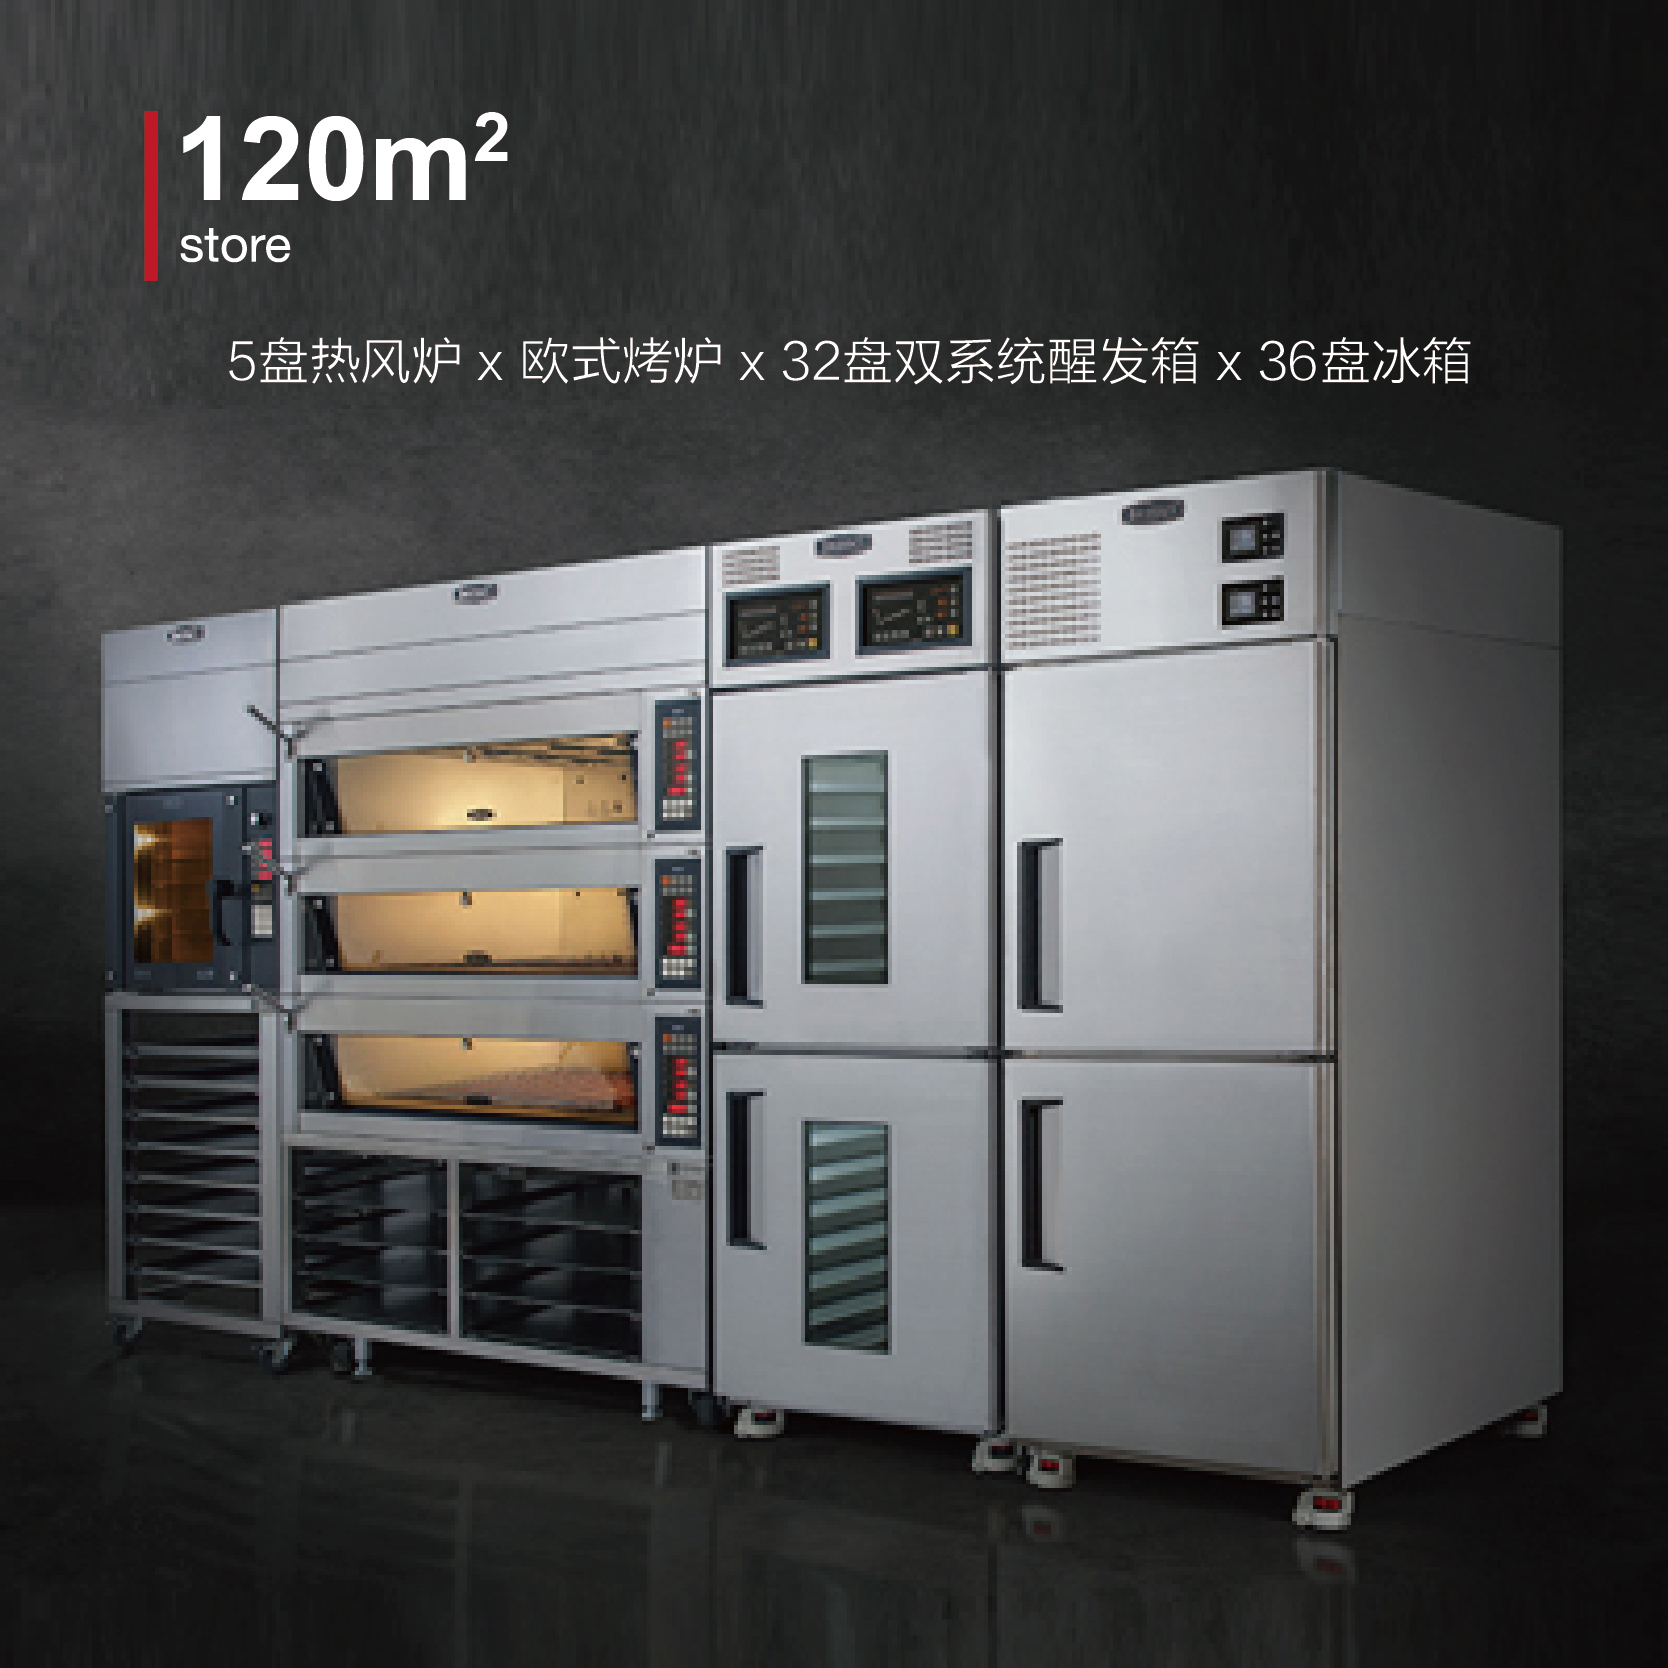 5盘热风炉 x 欧式烤炉 x 32盘双系统醒发箱 X 36盘冰箱